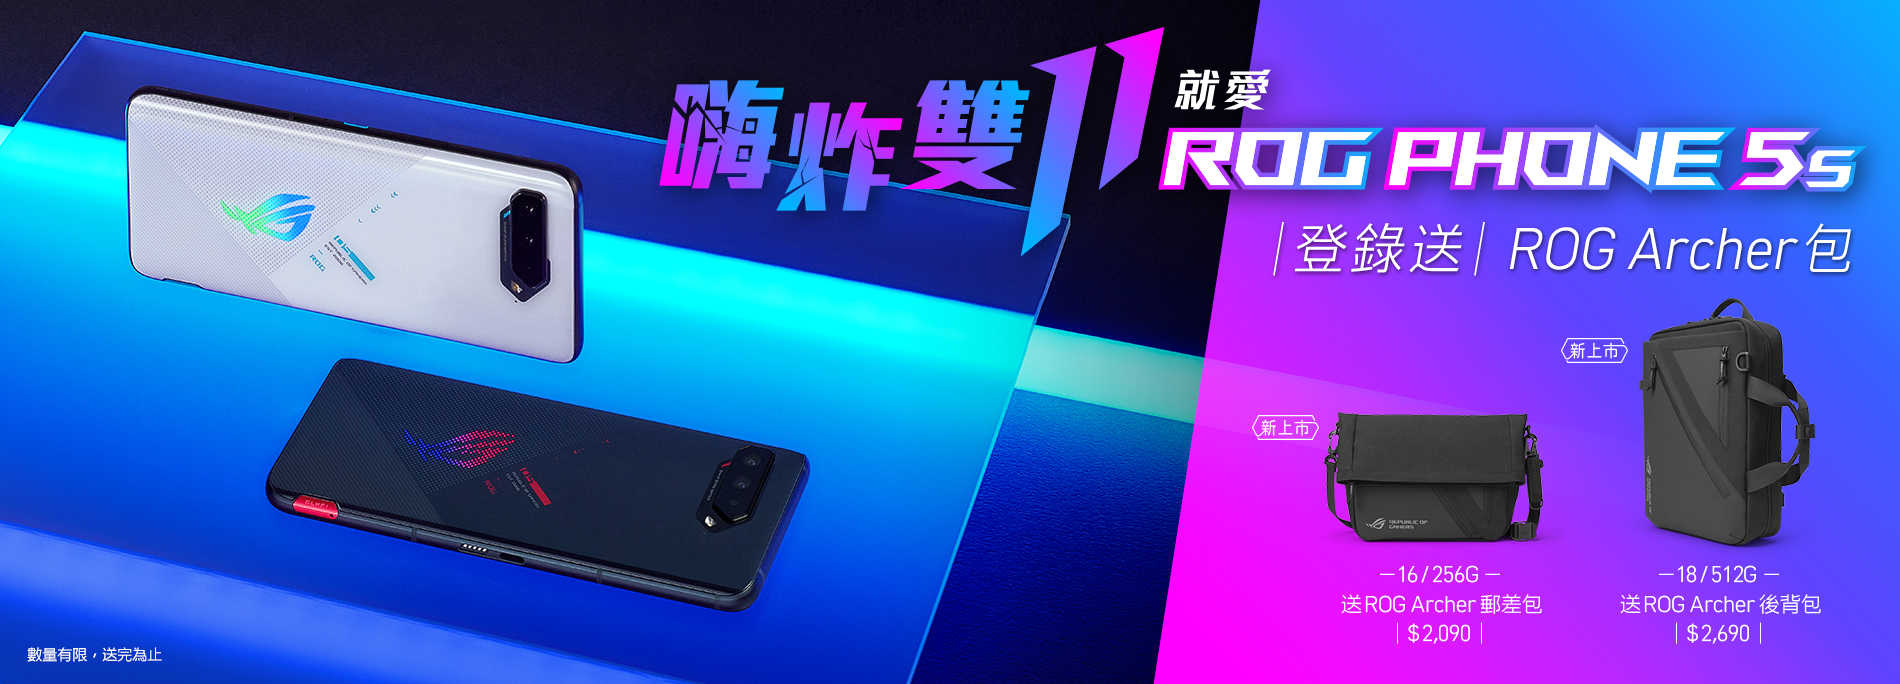 【雙11限定優惠】買ROG Phone 5s Series登錄送ROG Archer包